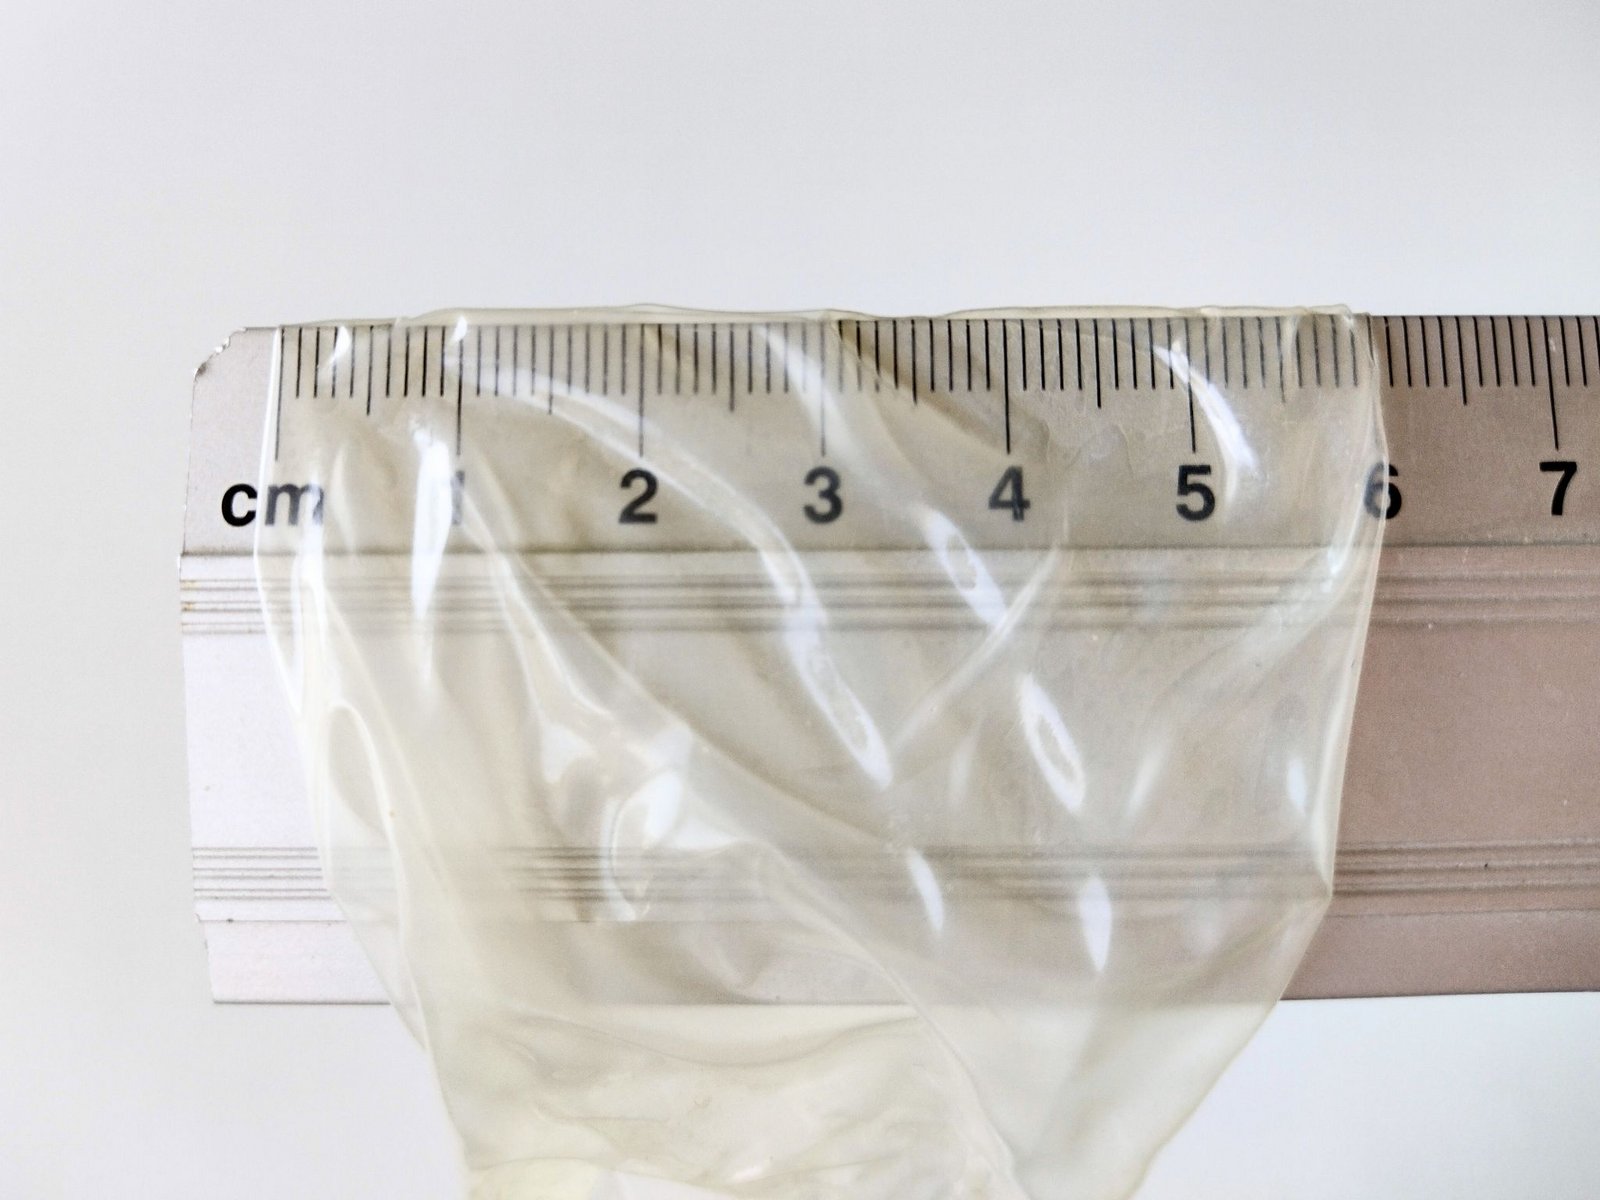 Largeur nominale d'un préservatif mesurée à la règle